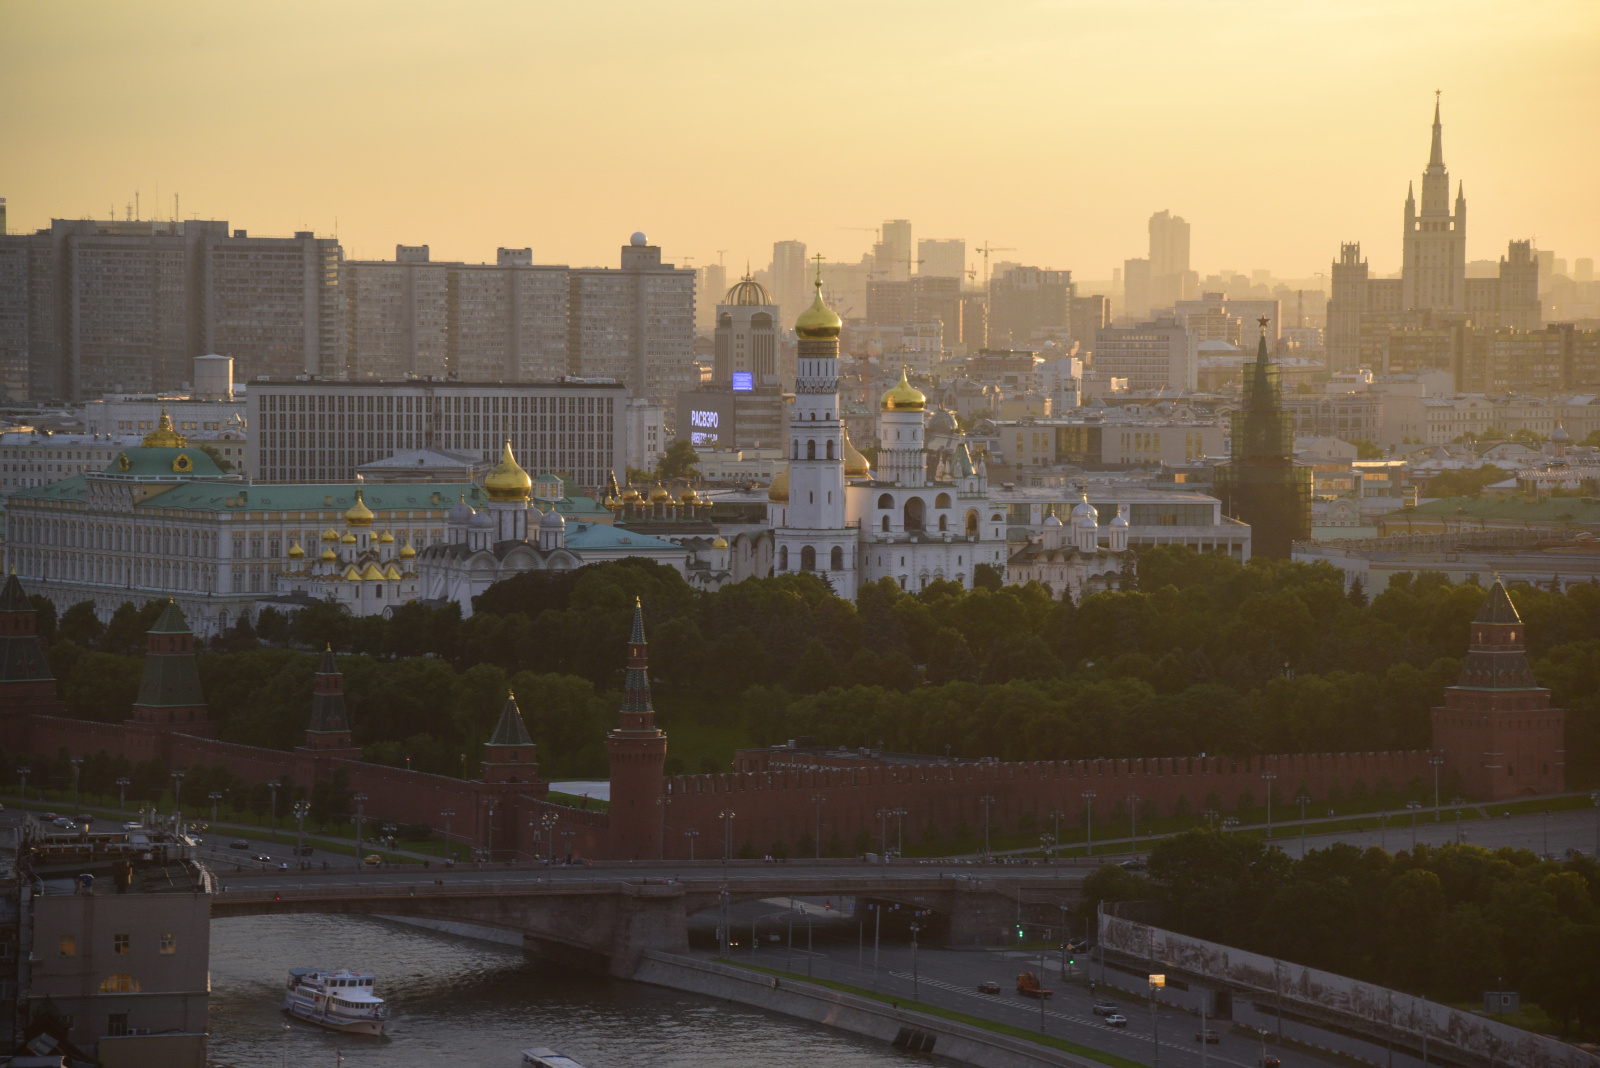 Москва вошла в ТОП-3 рейтинга регионов с актуальной «зеленой» повесткой